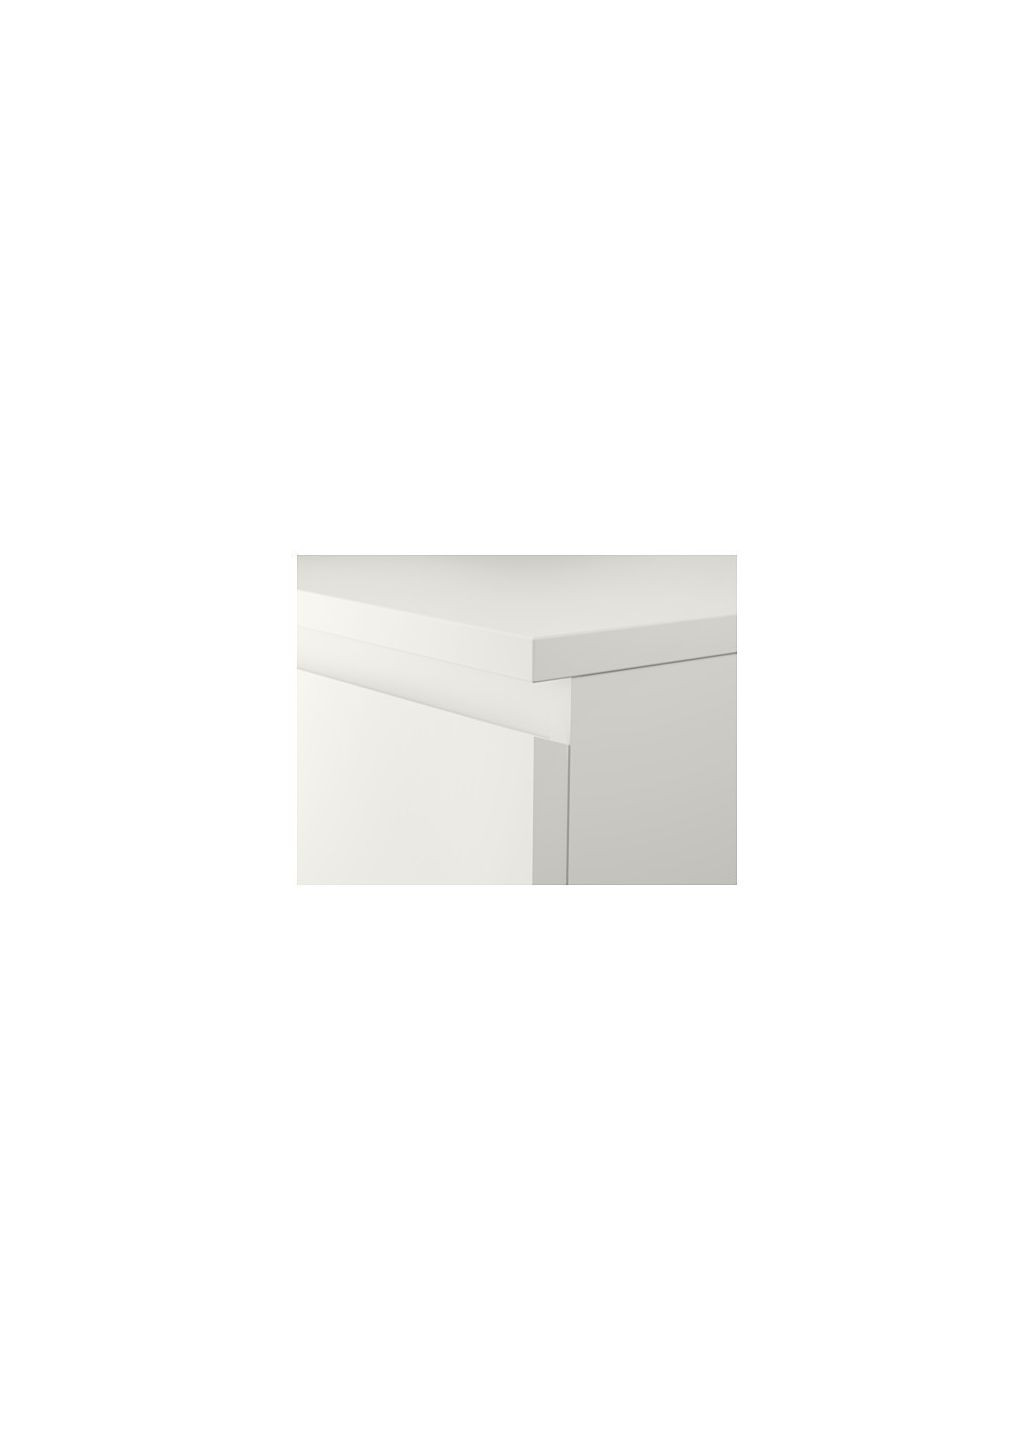 Комод 3 шухляди білий 80х78 см IKEA (277964936)